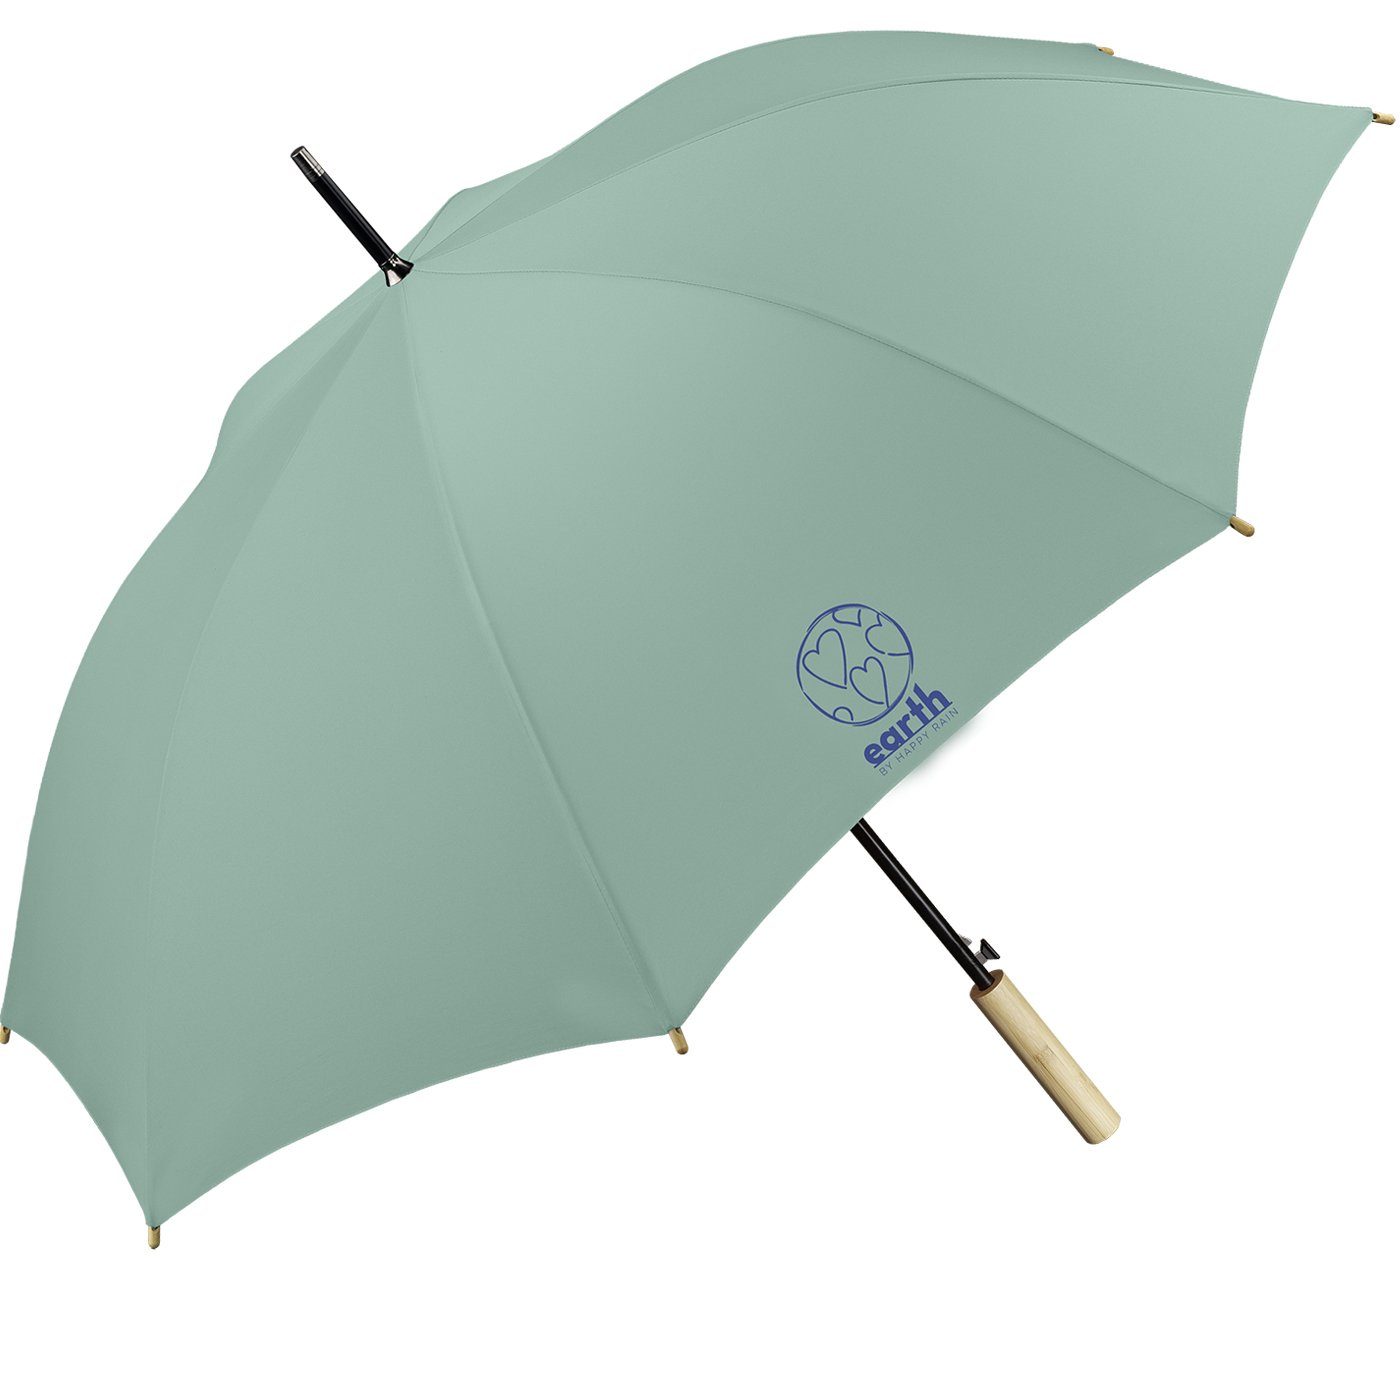 Earth die etwas tun HAPPY mit nachhaltiger für Umwelt geschützt - gut Schirm türkis Langregenschirm Auf-Automatik, RAIN